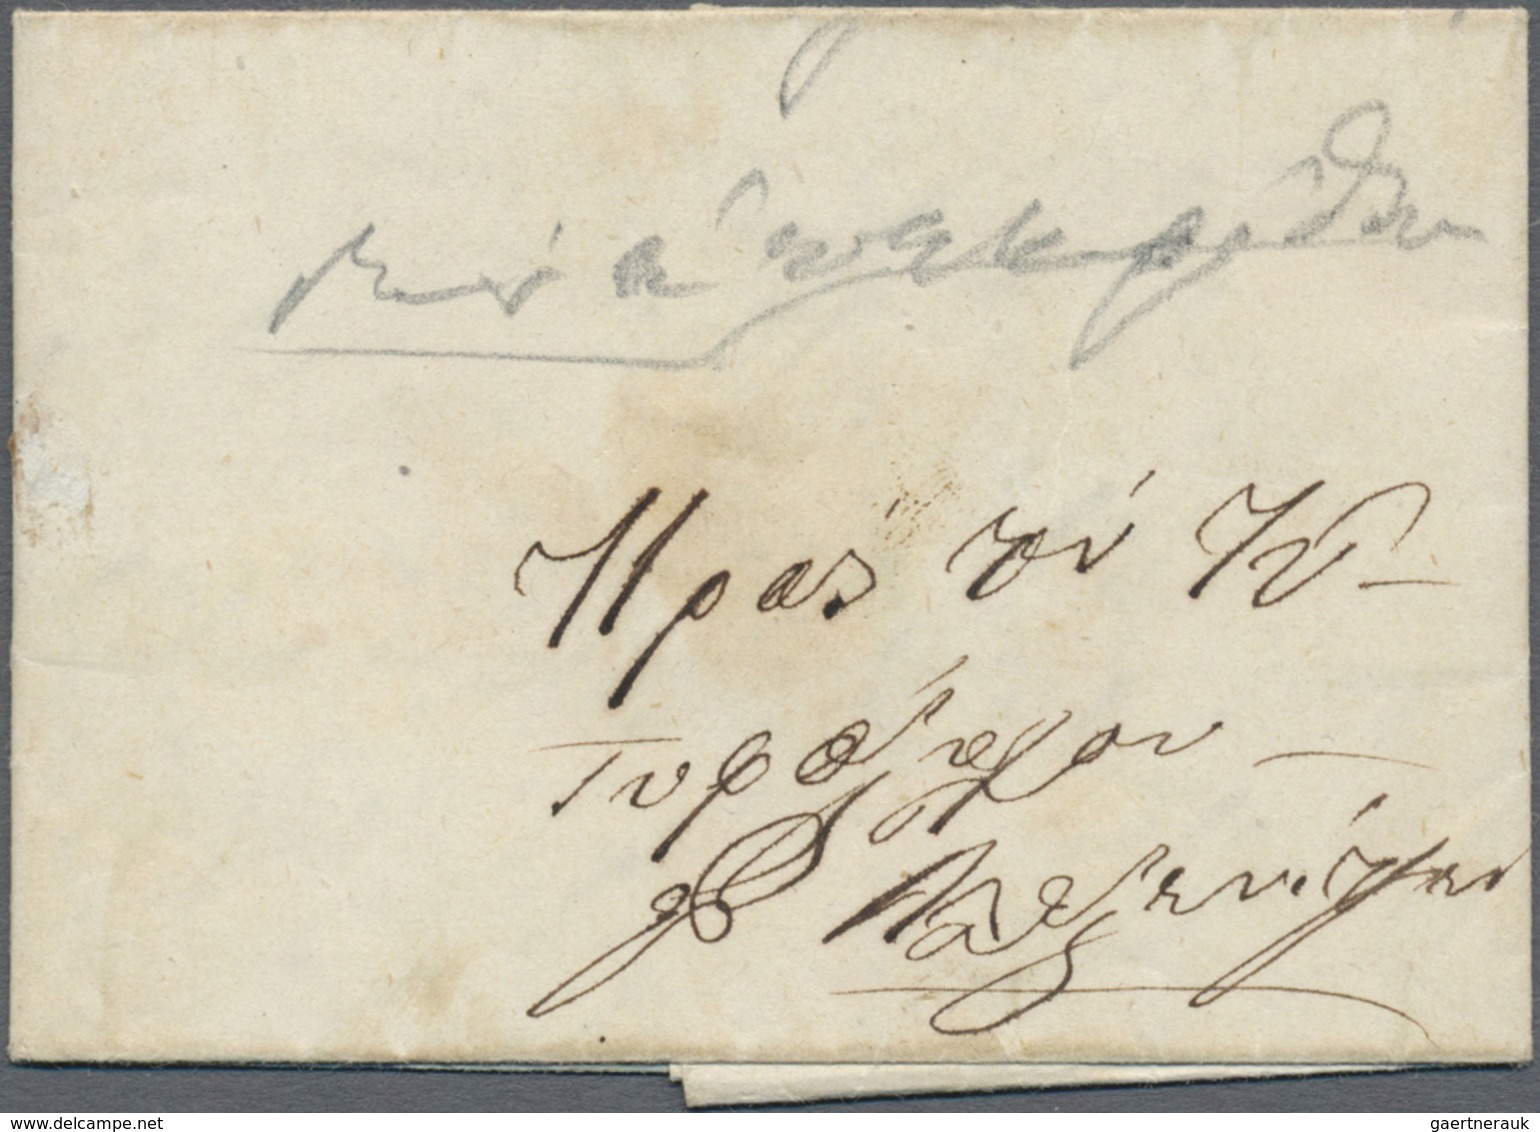 Br Serbien - Vorphilatelie: 1851/57, 5 Faltbriefe von Nis nach Aleksinac mit unterschiedlichen handschr